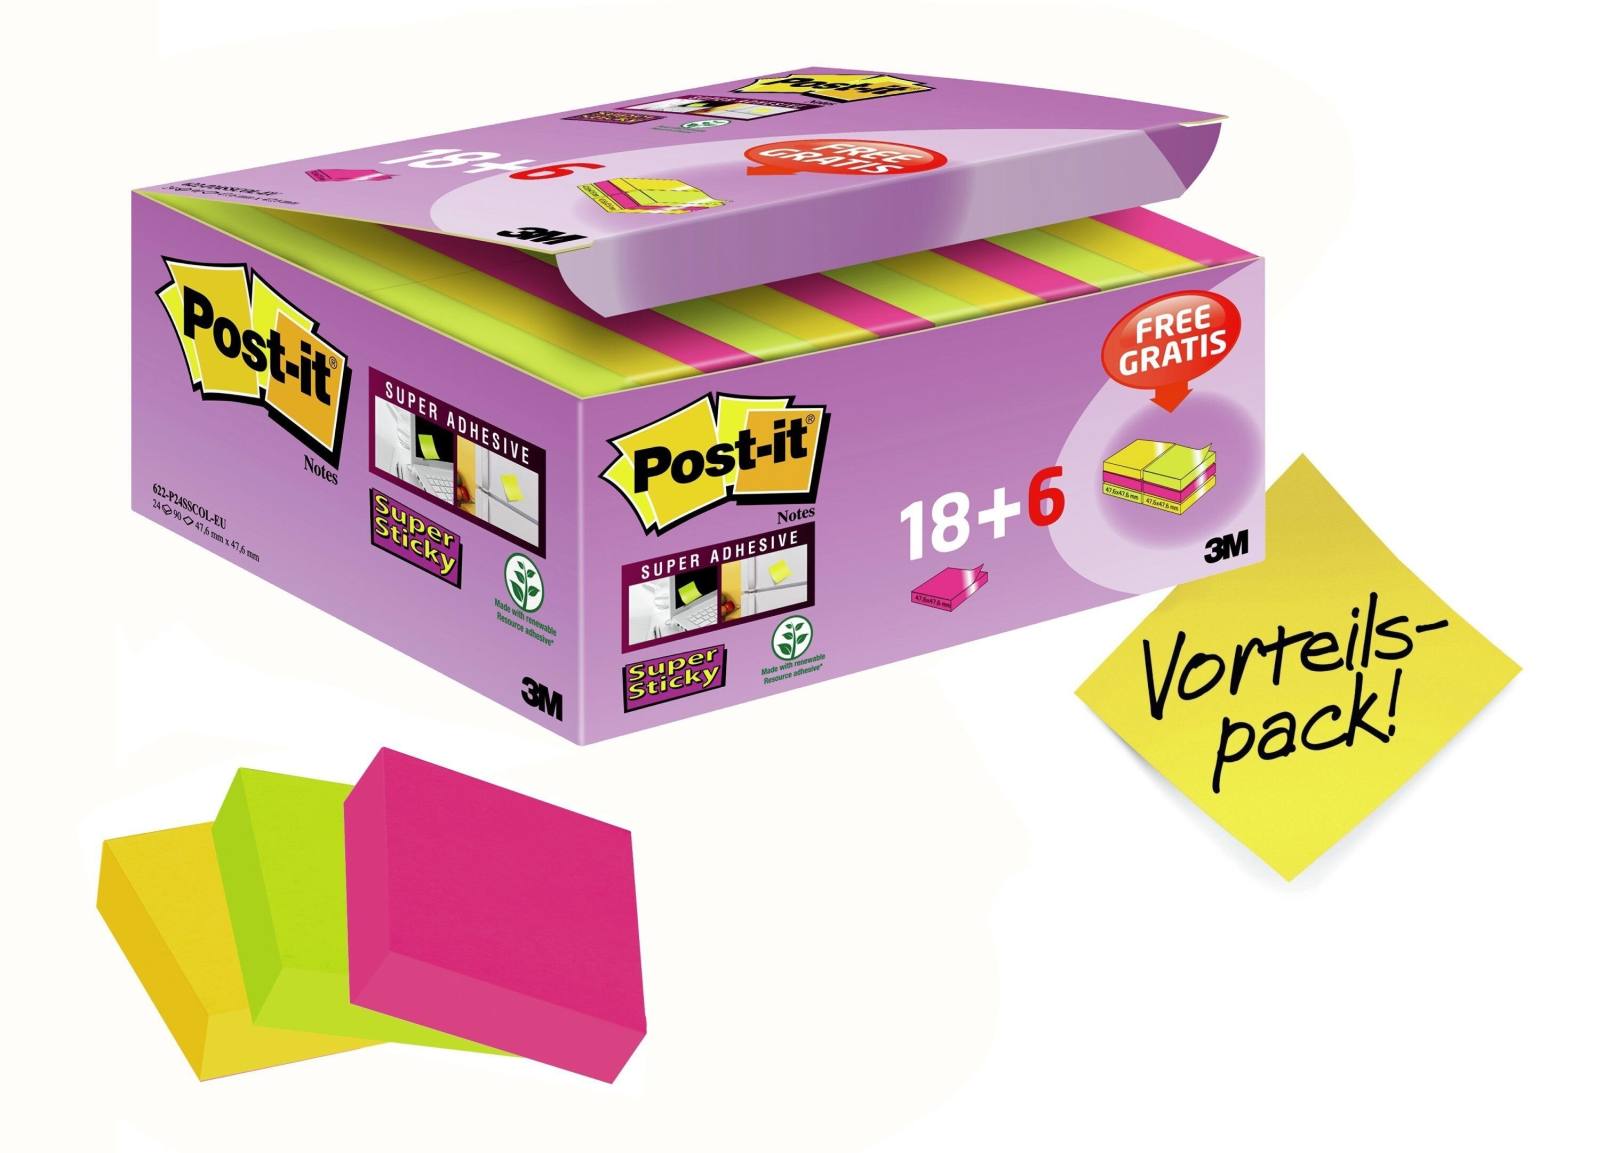 3M Post-it Super Sticky Notes Promotion 622P24SC, 24 blocchetti da 90 fogli in una confezione a prezzo speciale, ultra rosa, giallo, verde neon, 48 mm x 48 mm, non cellophanati singolarmente, certificati PEFC